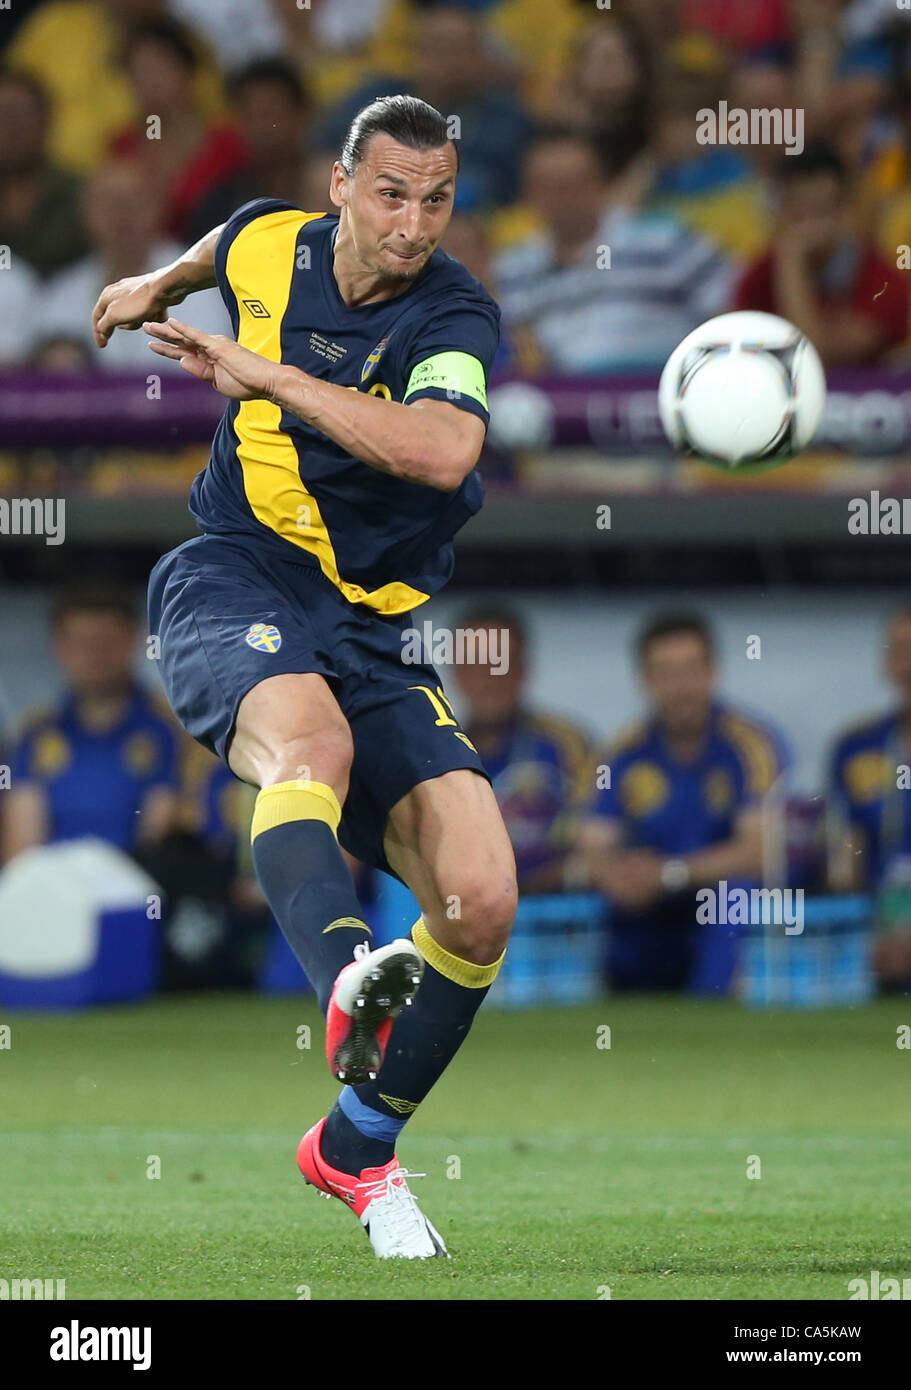 14.10.2009 L'Ukraine, Kiev : un joueur suédois Zlatan Ibrahimovic à la phase finale du Championnat d'Europe de football entre les équipes de l'Ukraine et la Suède. Banque D'Images